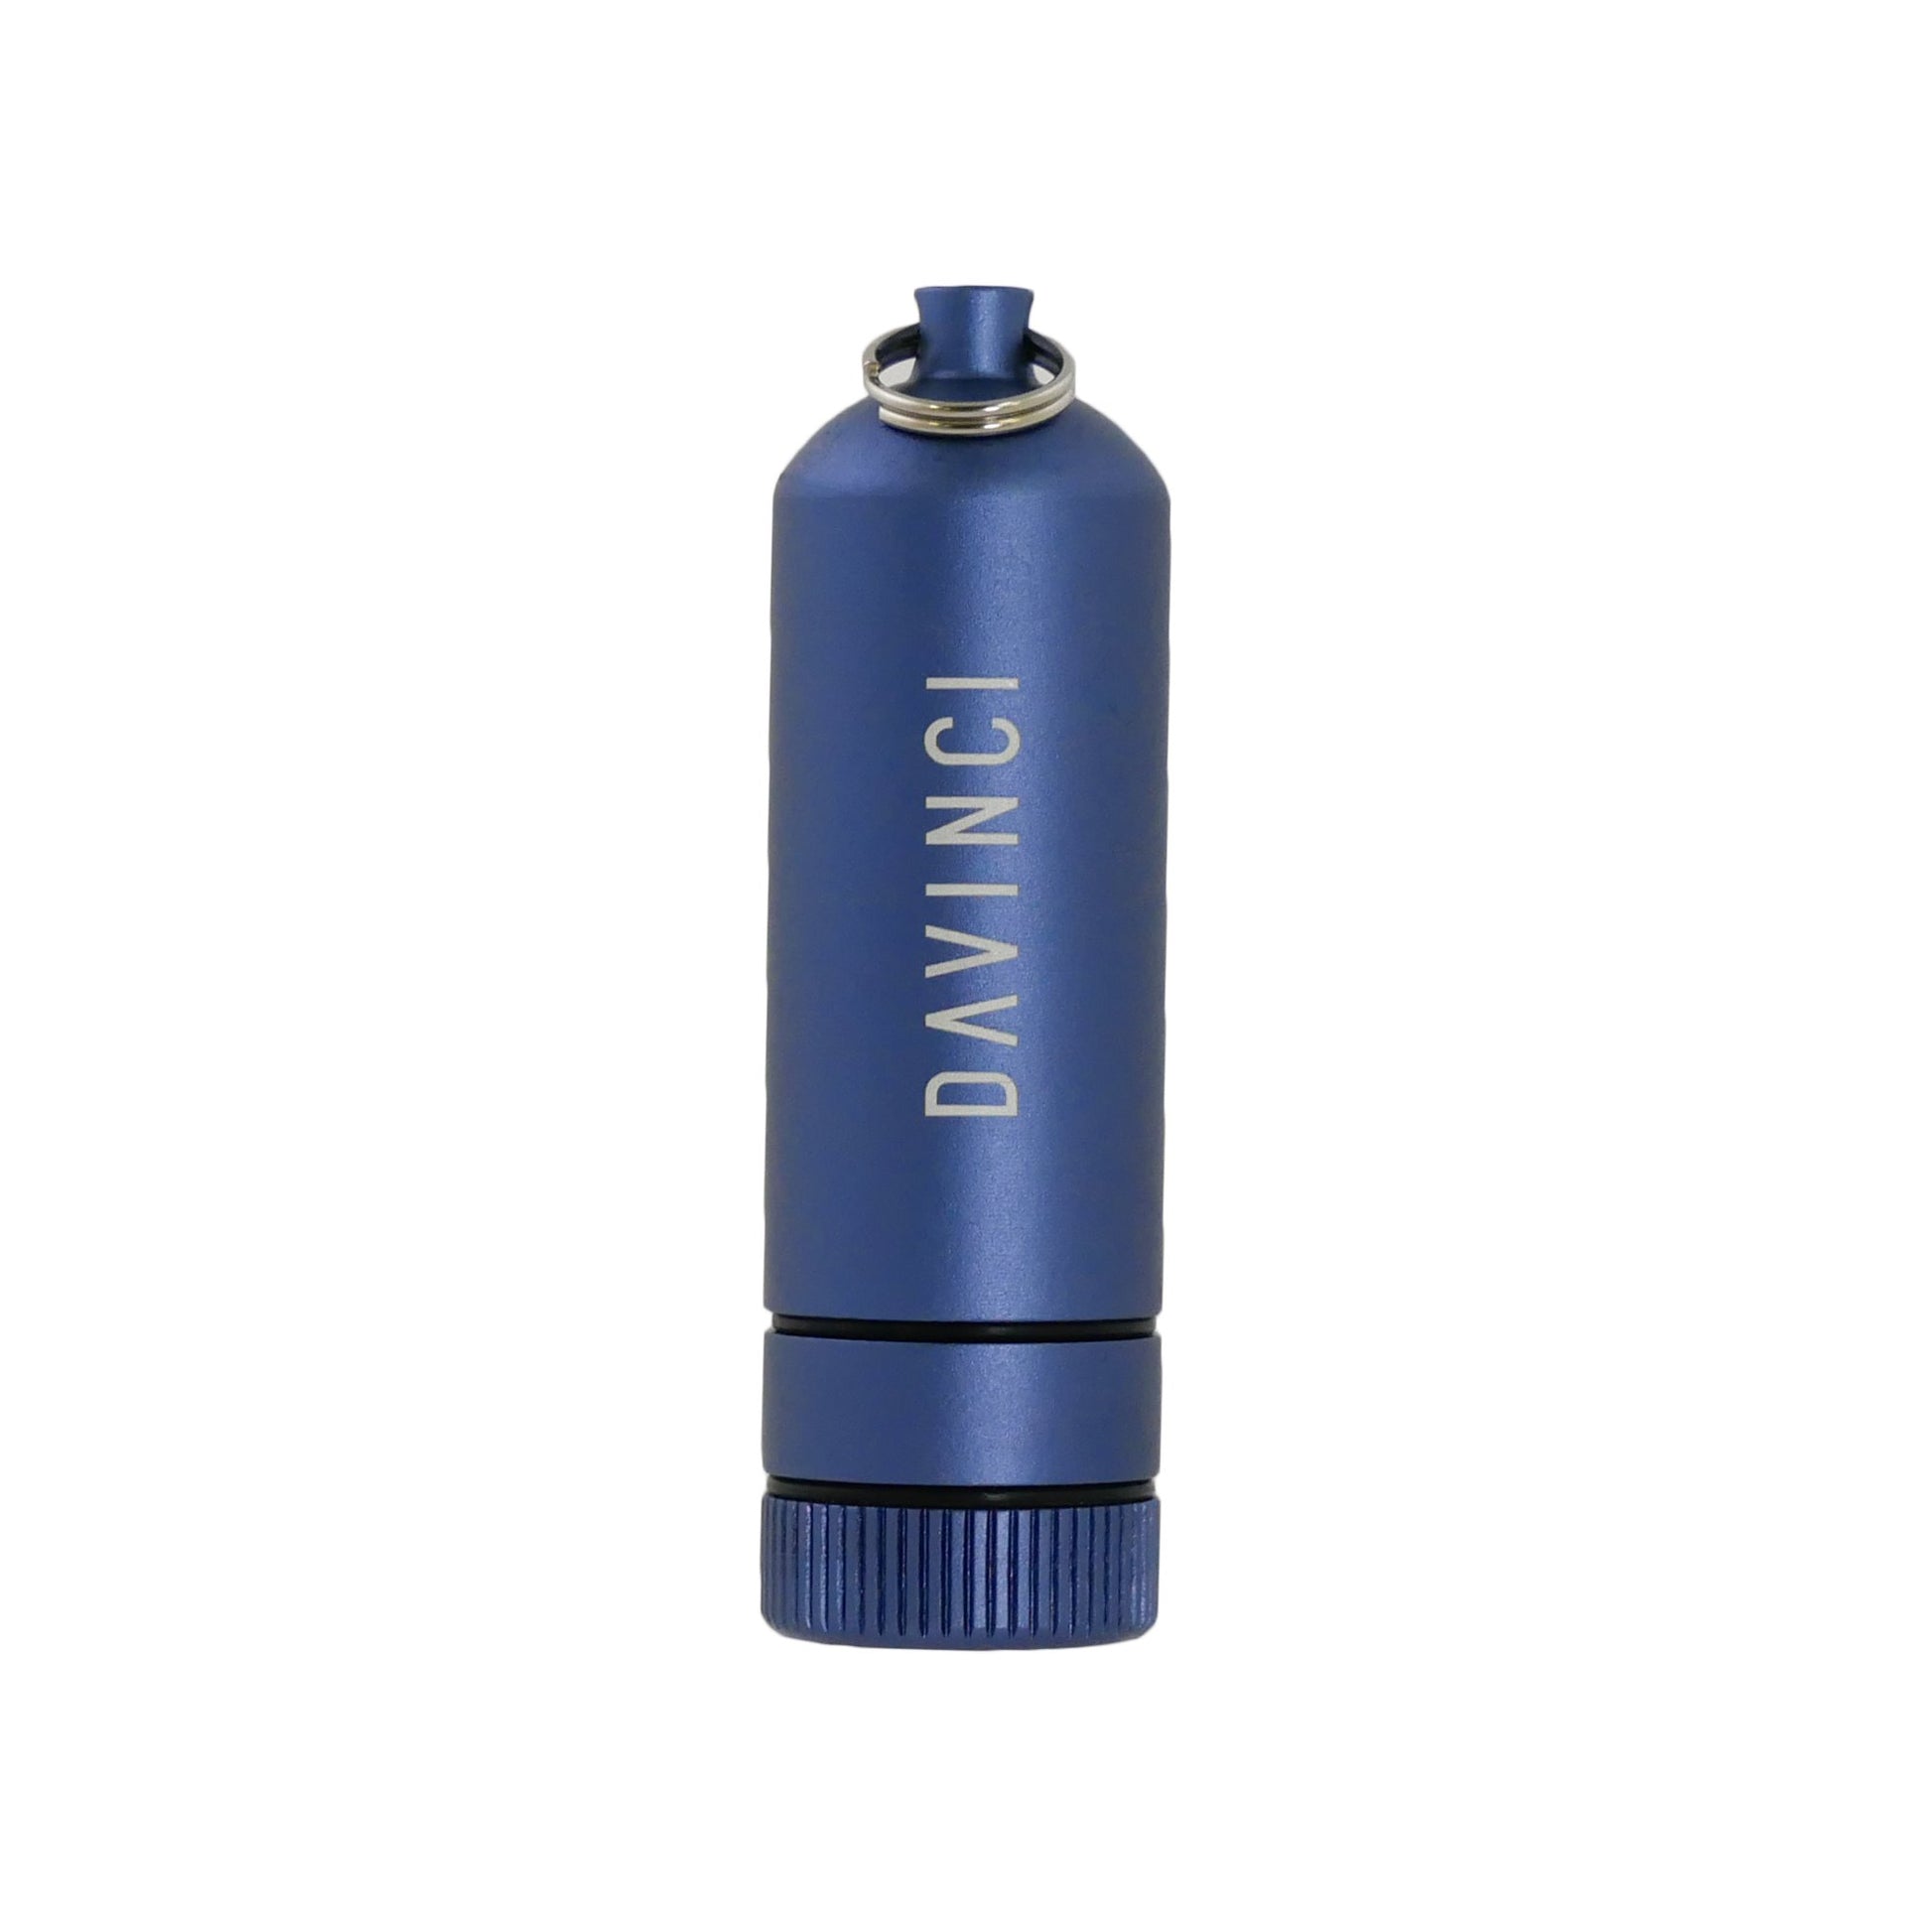 MIQRO Carrying Can XL Vaporizers da vinci Cobalt (Blue) 